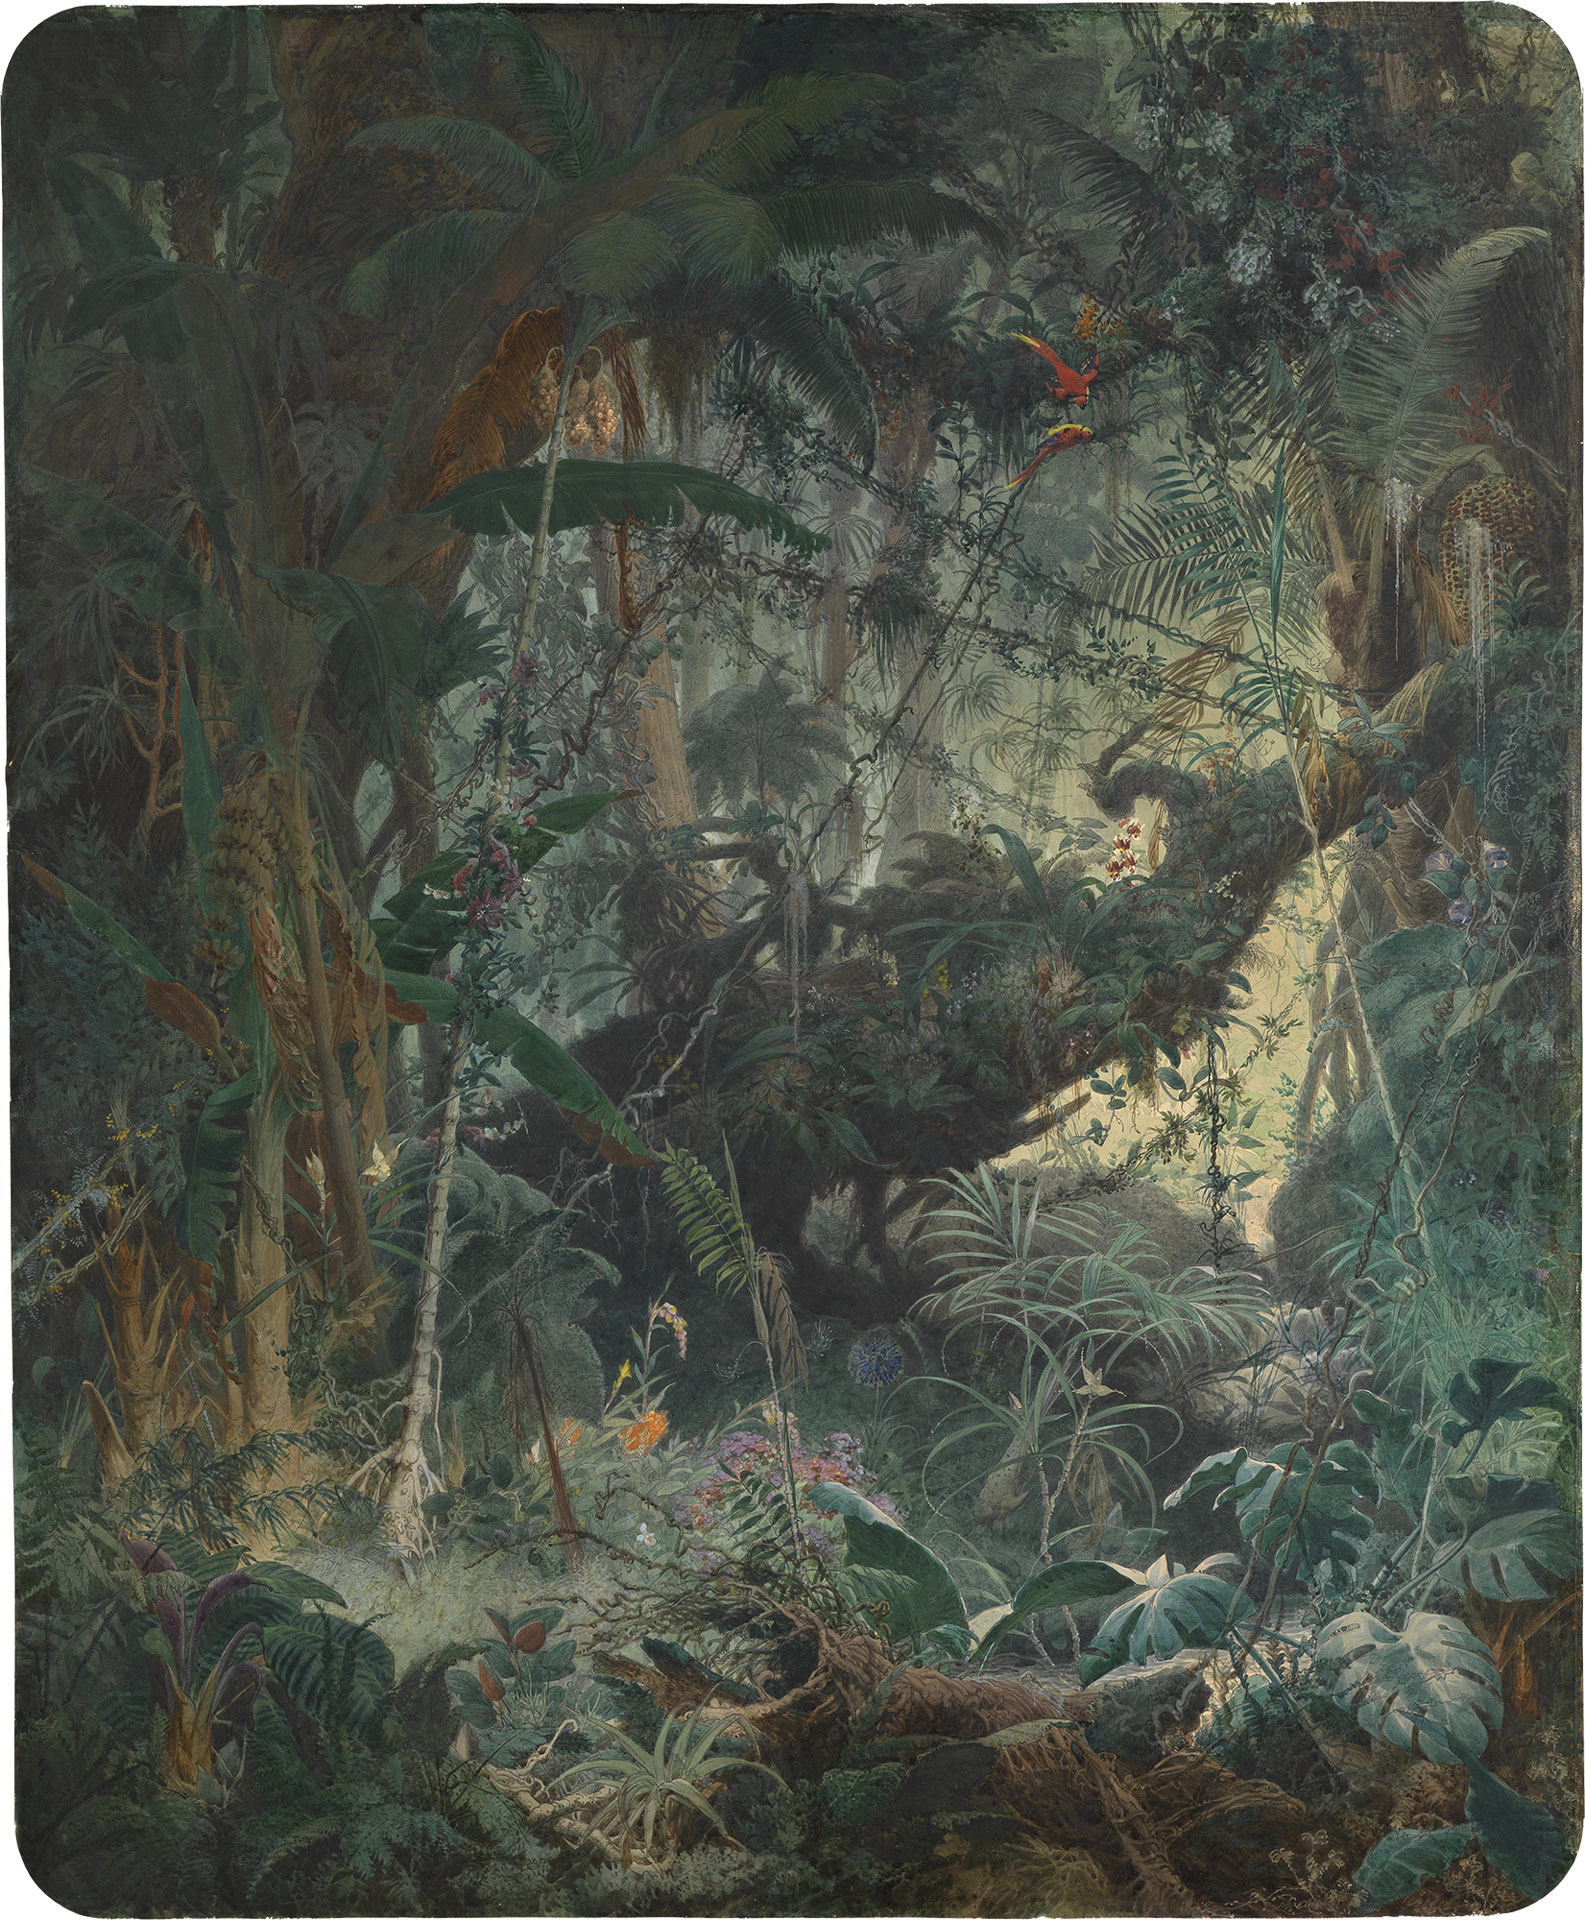 Abbildung des Gemäldes "Brasilianischer Urwald" des Künstlers Adolf Schrödters. Das Bild zeigt einen mit Pflanzen und Lianen überwucherten Regenwald.